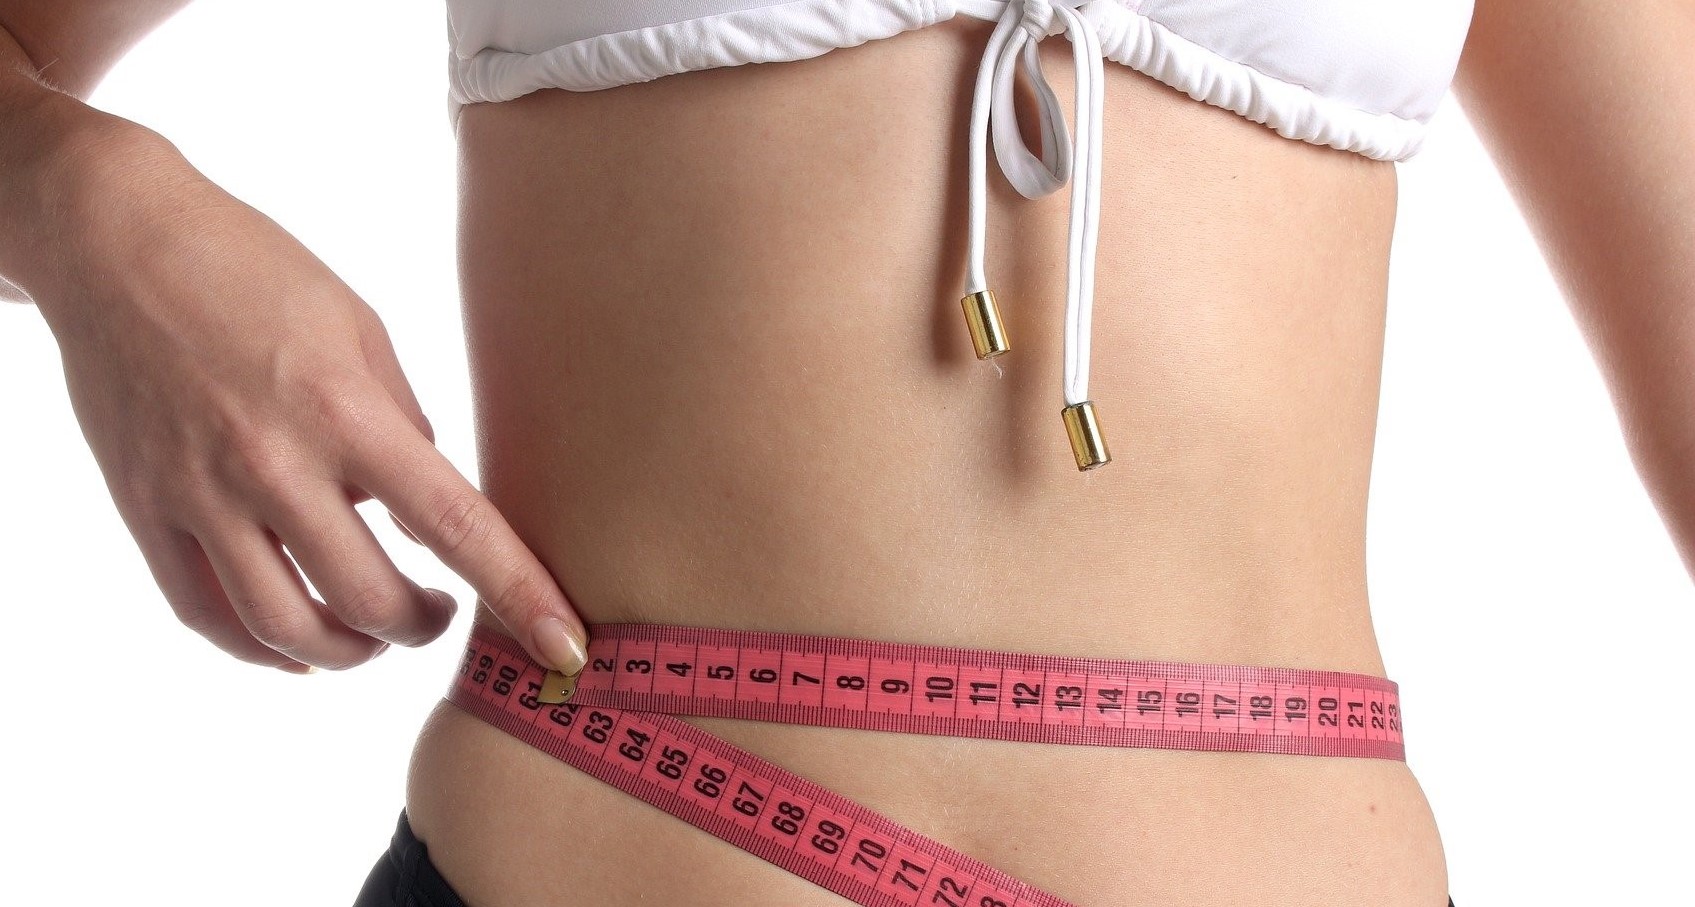 waist measurement. weight loss tips